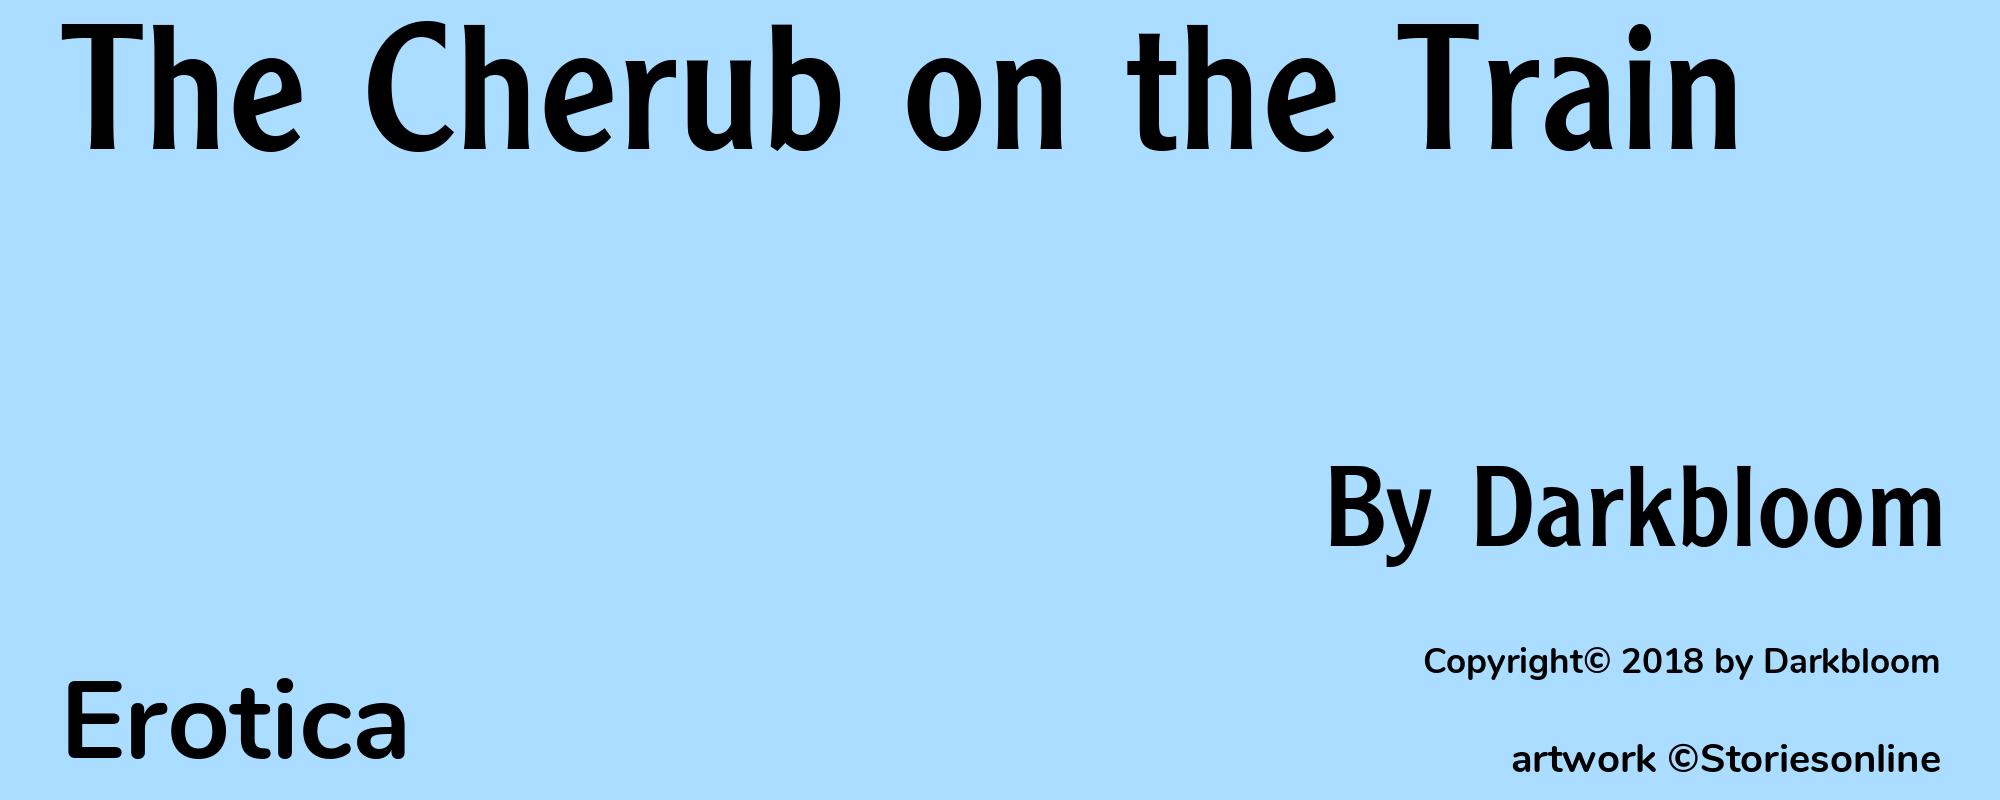 The Cherub on the Train - Cover